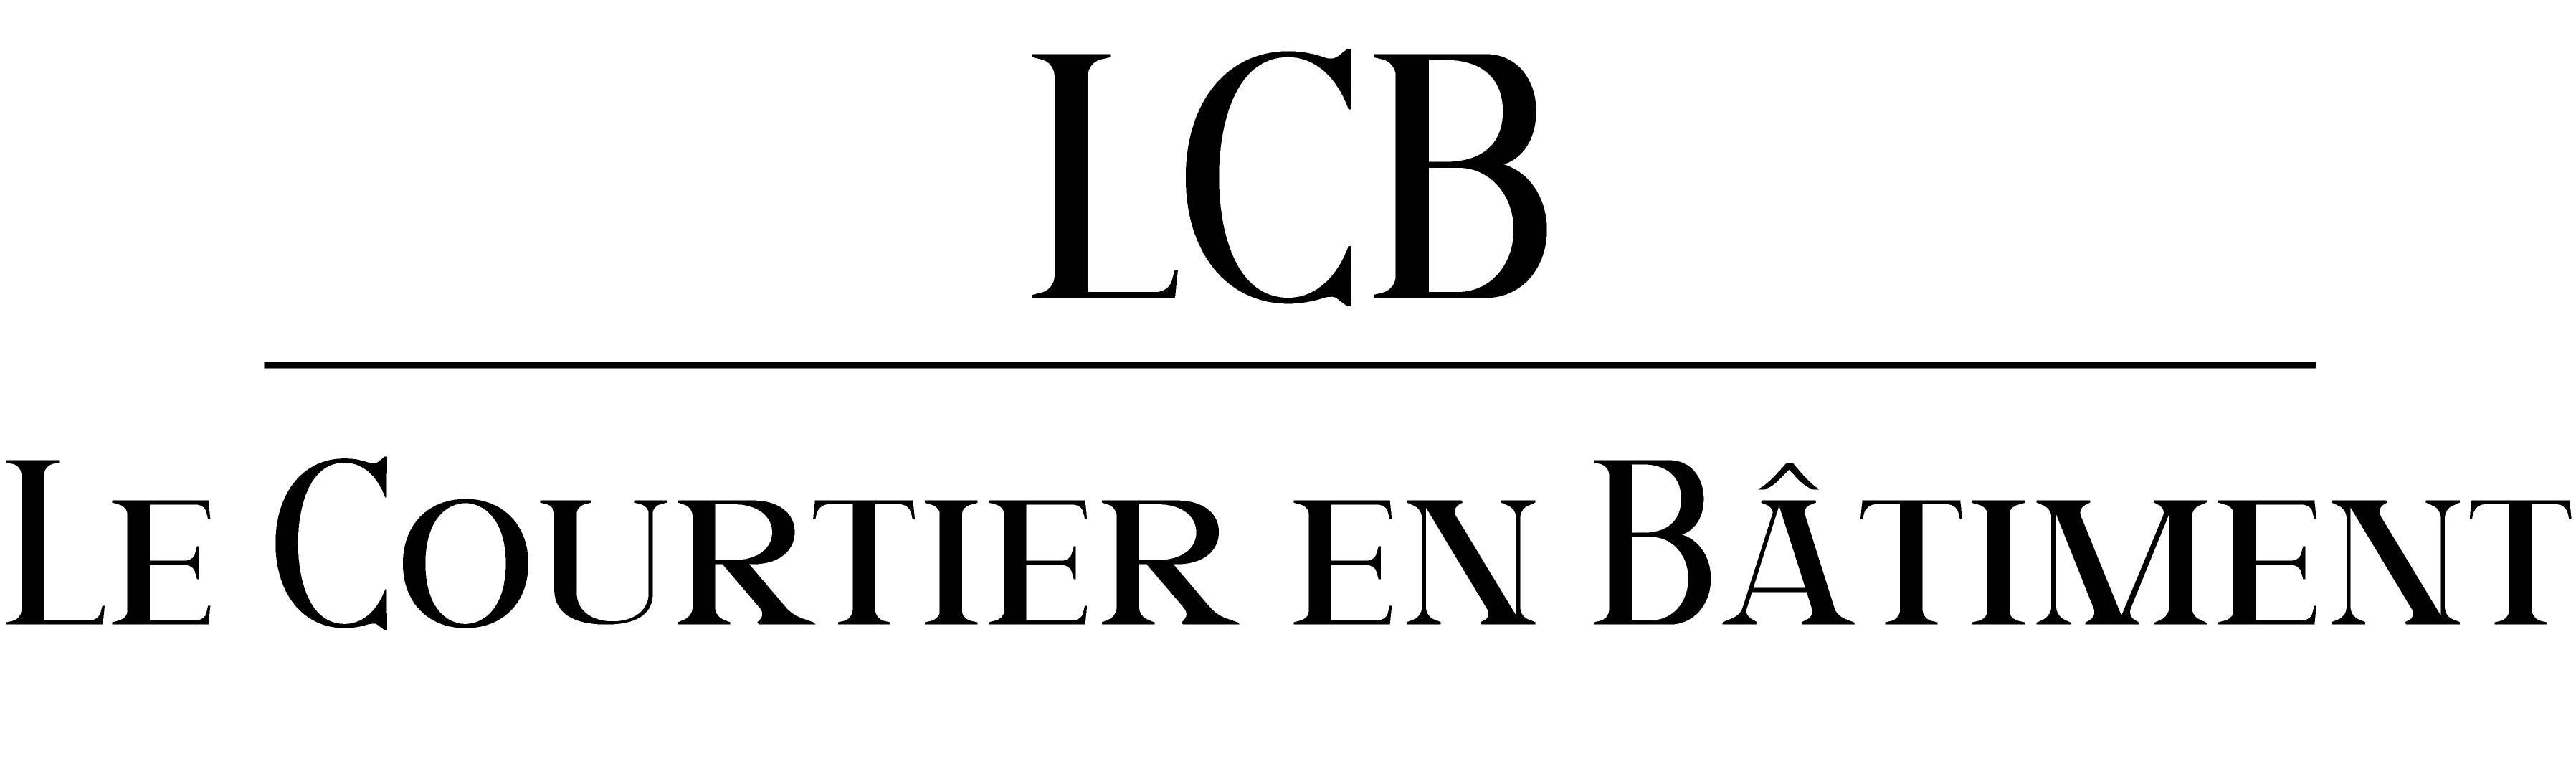 logo texte seul sans fond noir